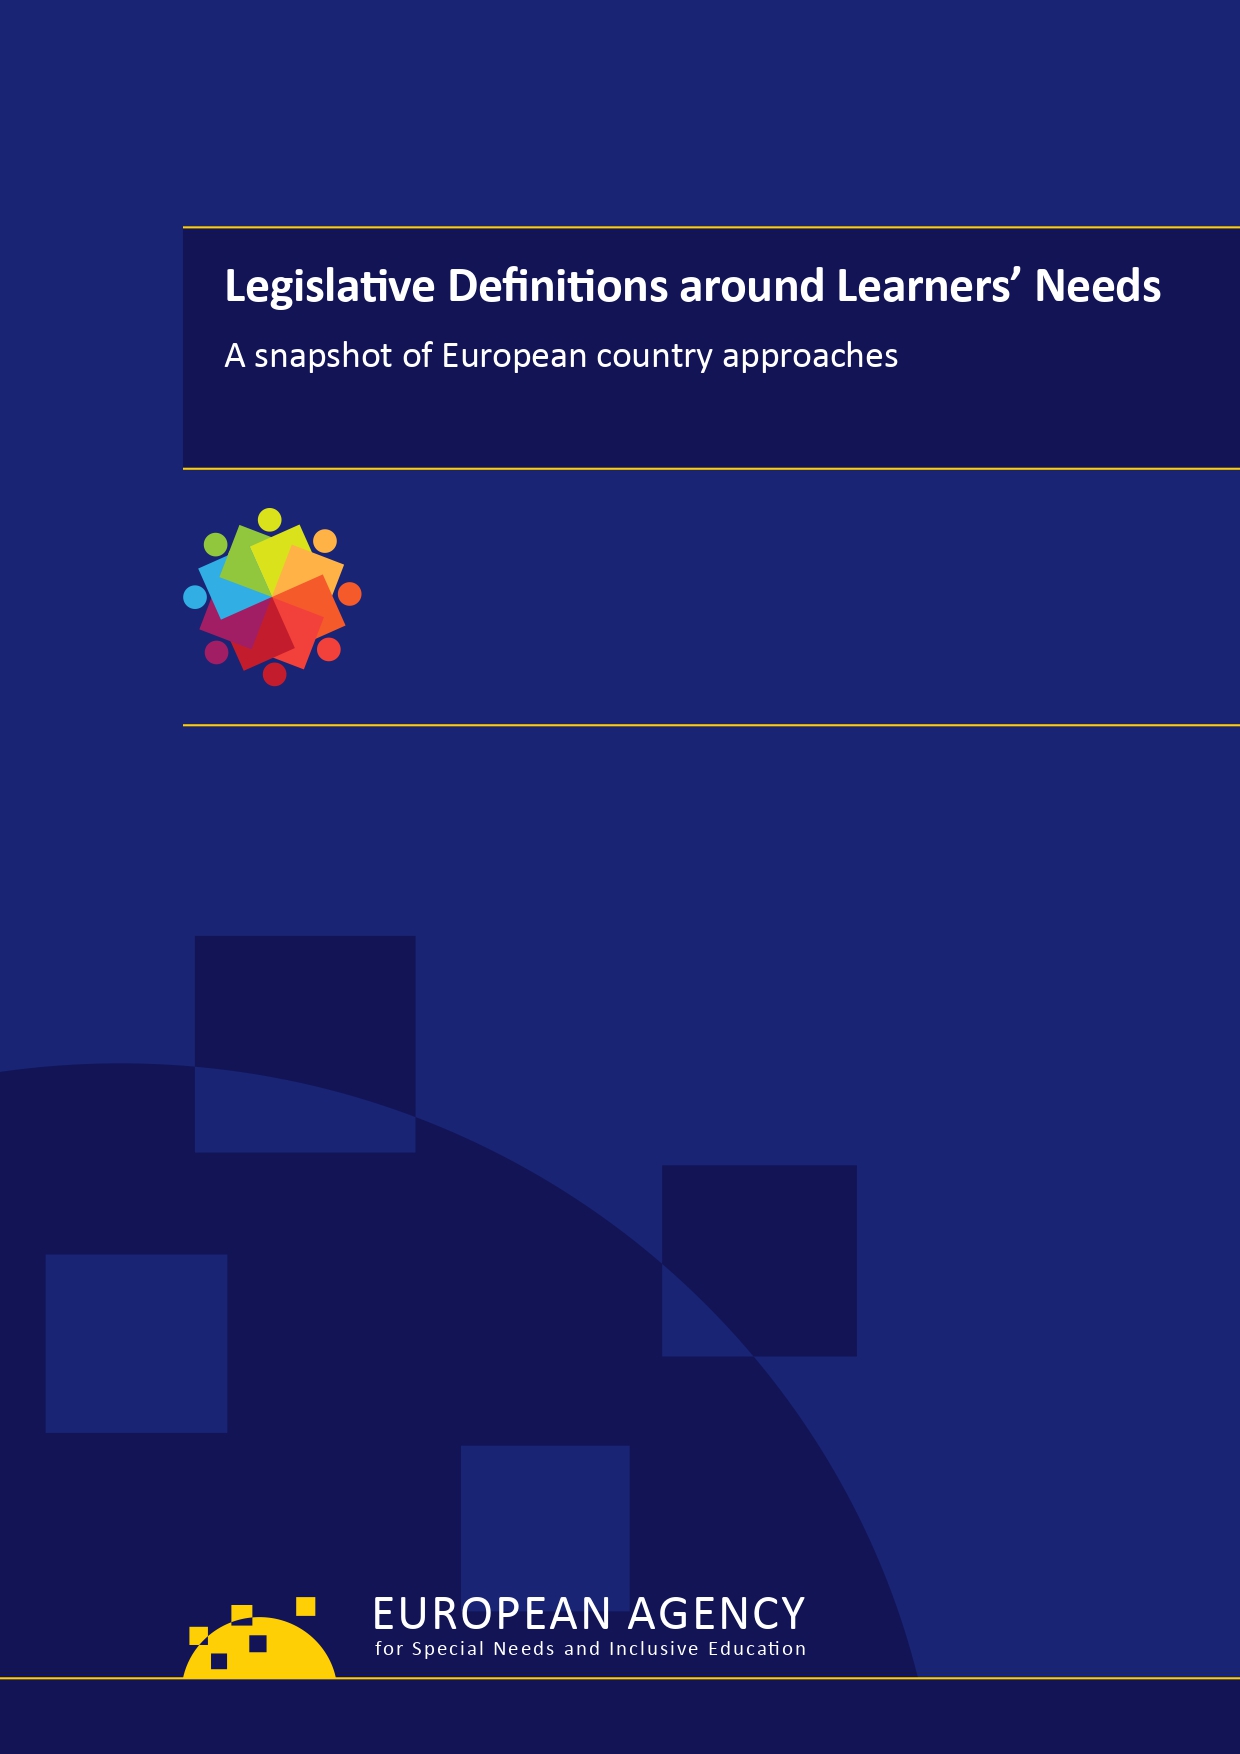 Legislative definition_cover page